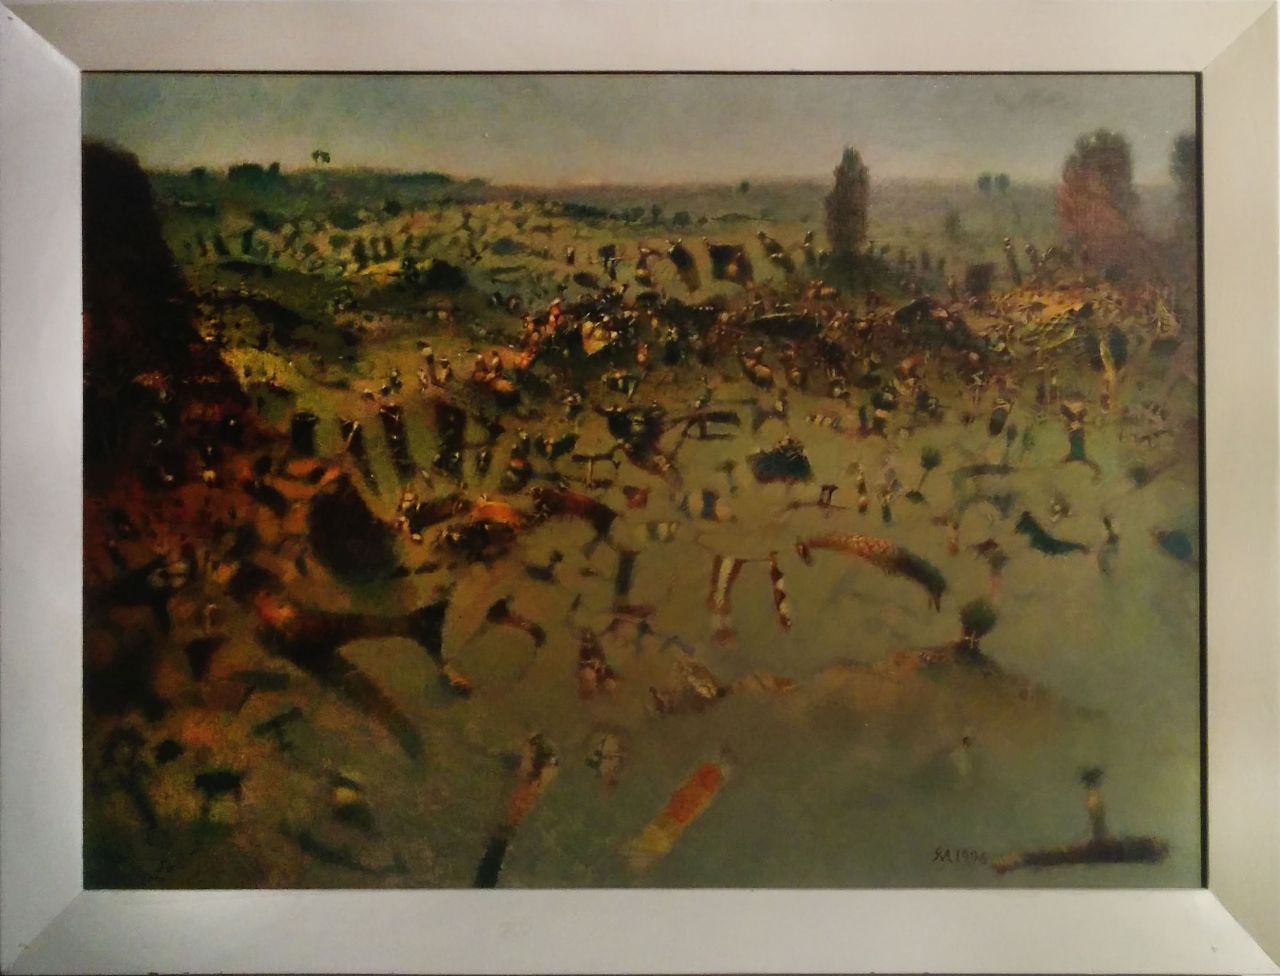 Max-Peter Haering, Phantastische Landschaft mit Wacholder, 1996, Öl auf Leinwand,, 50 cm x 68 cm, Preis auf Anfrage, SüdWestGalerie